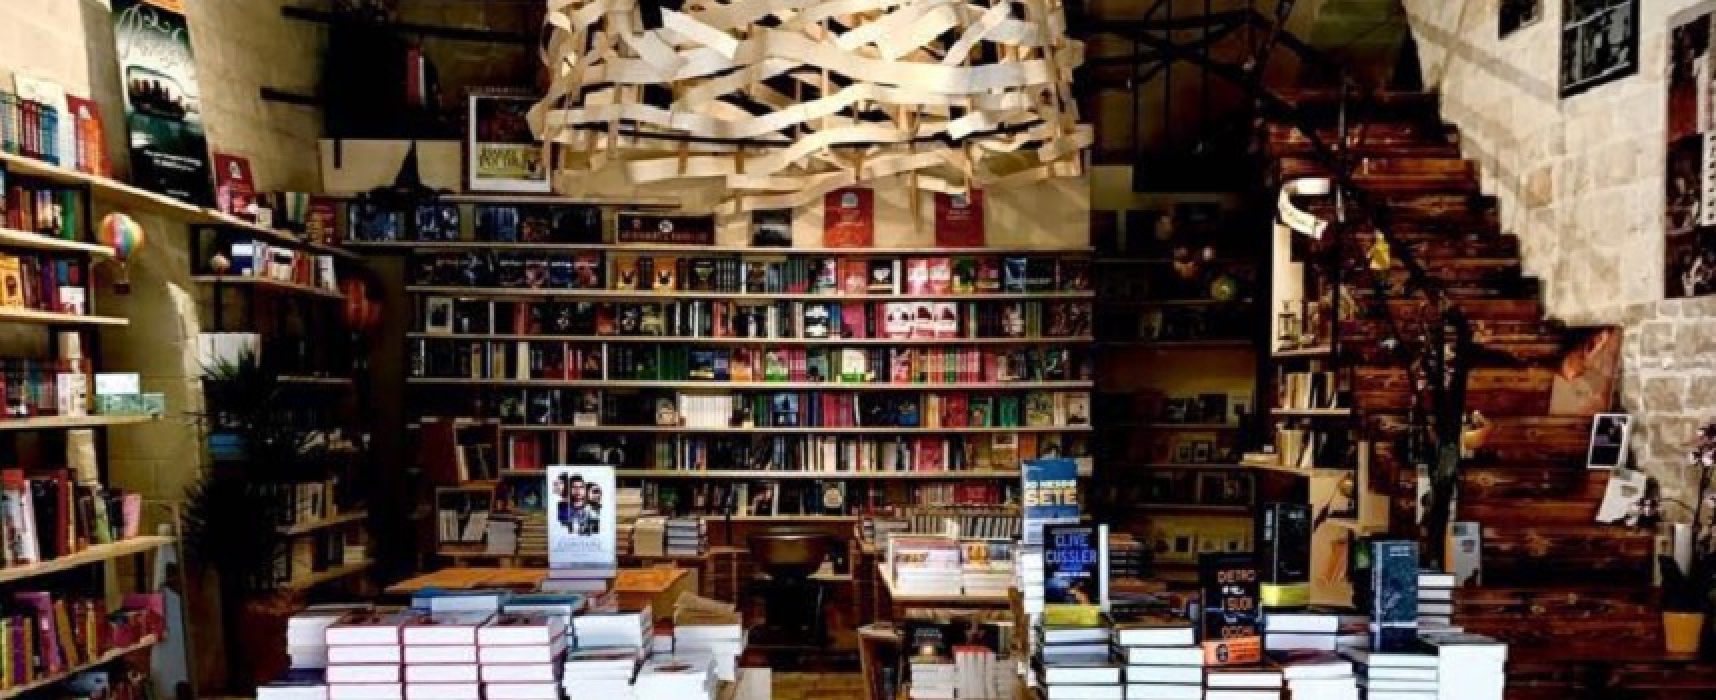 L’ex ministro Bray elogia il Mondadori Bookstore: “Una delle librerie più belle”